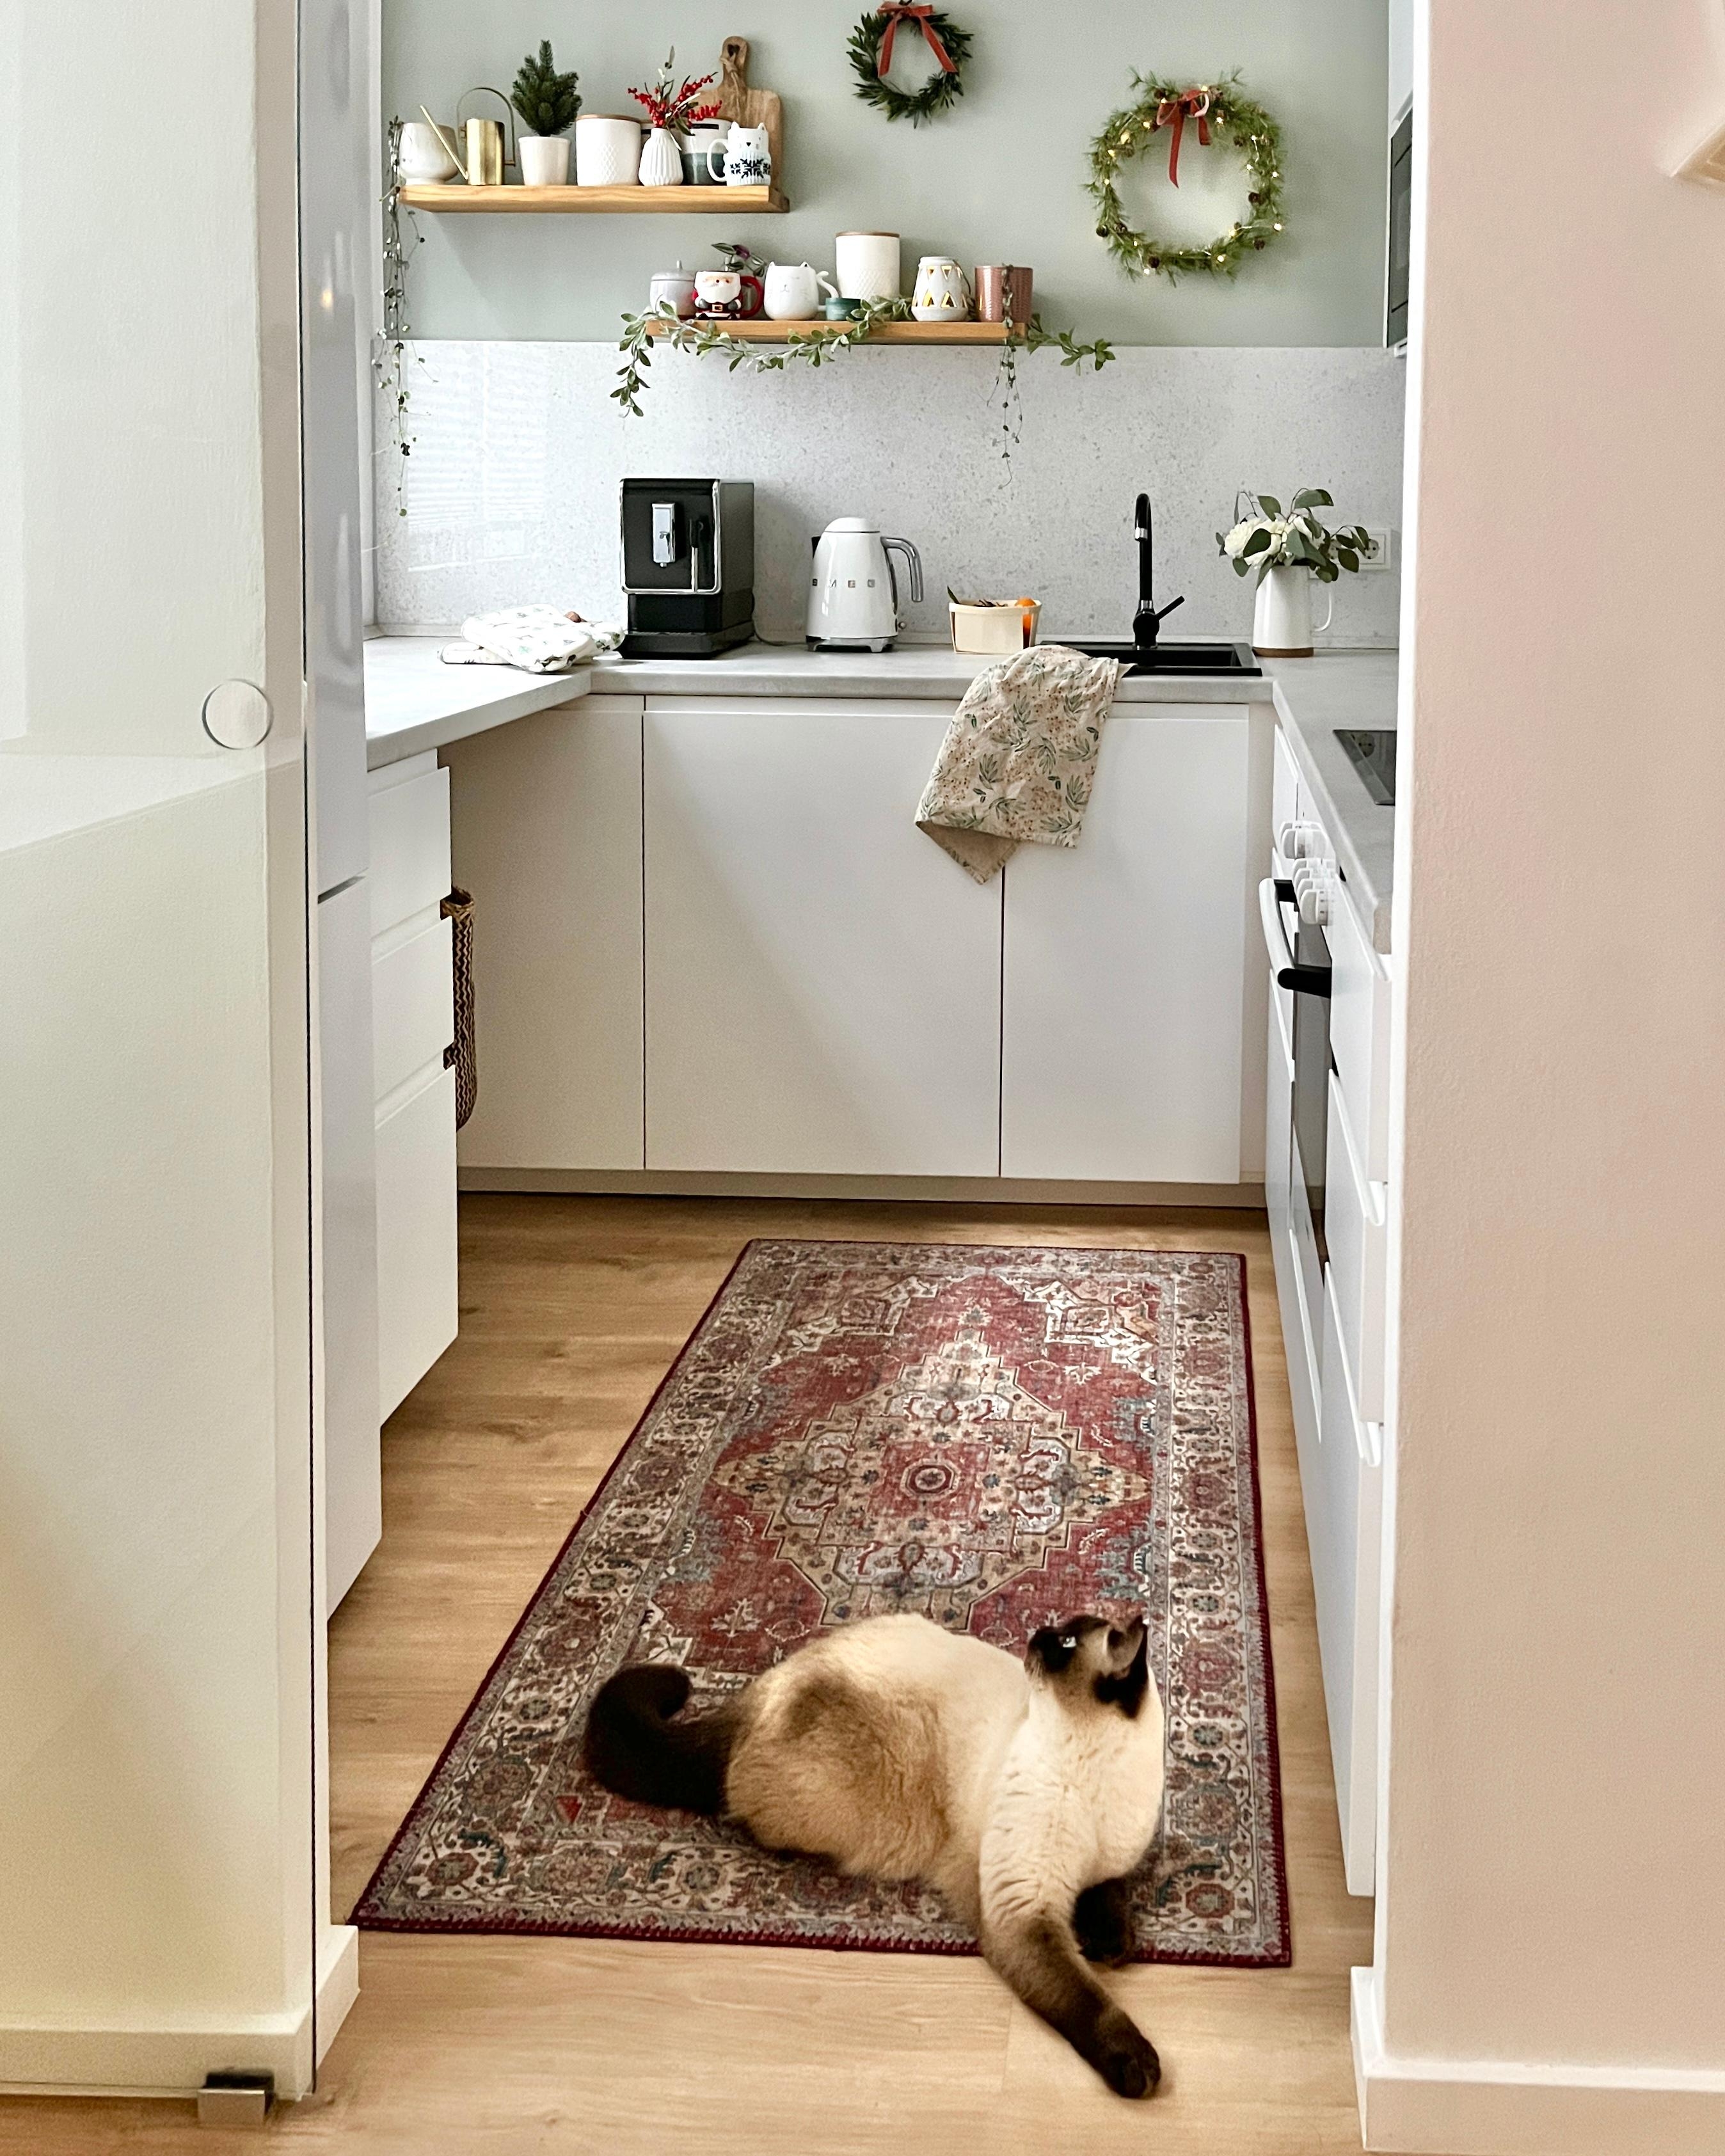 Meine Küchenhilfe 🤭🫣
#weißeküche #kleineküche #ikeaküche #orientteppich #wandregale